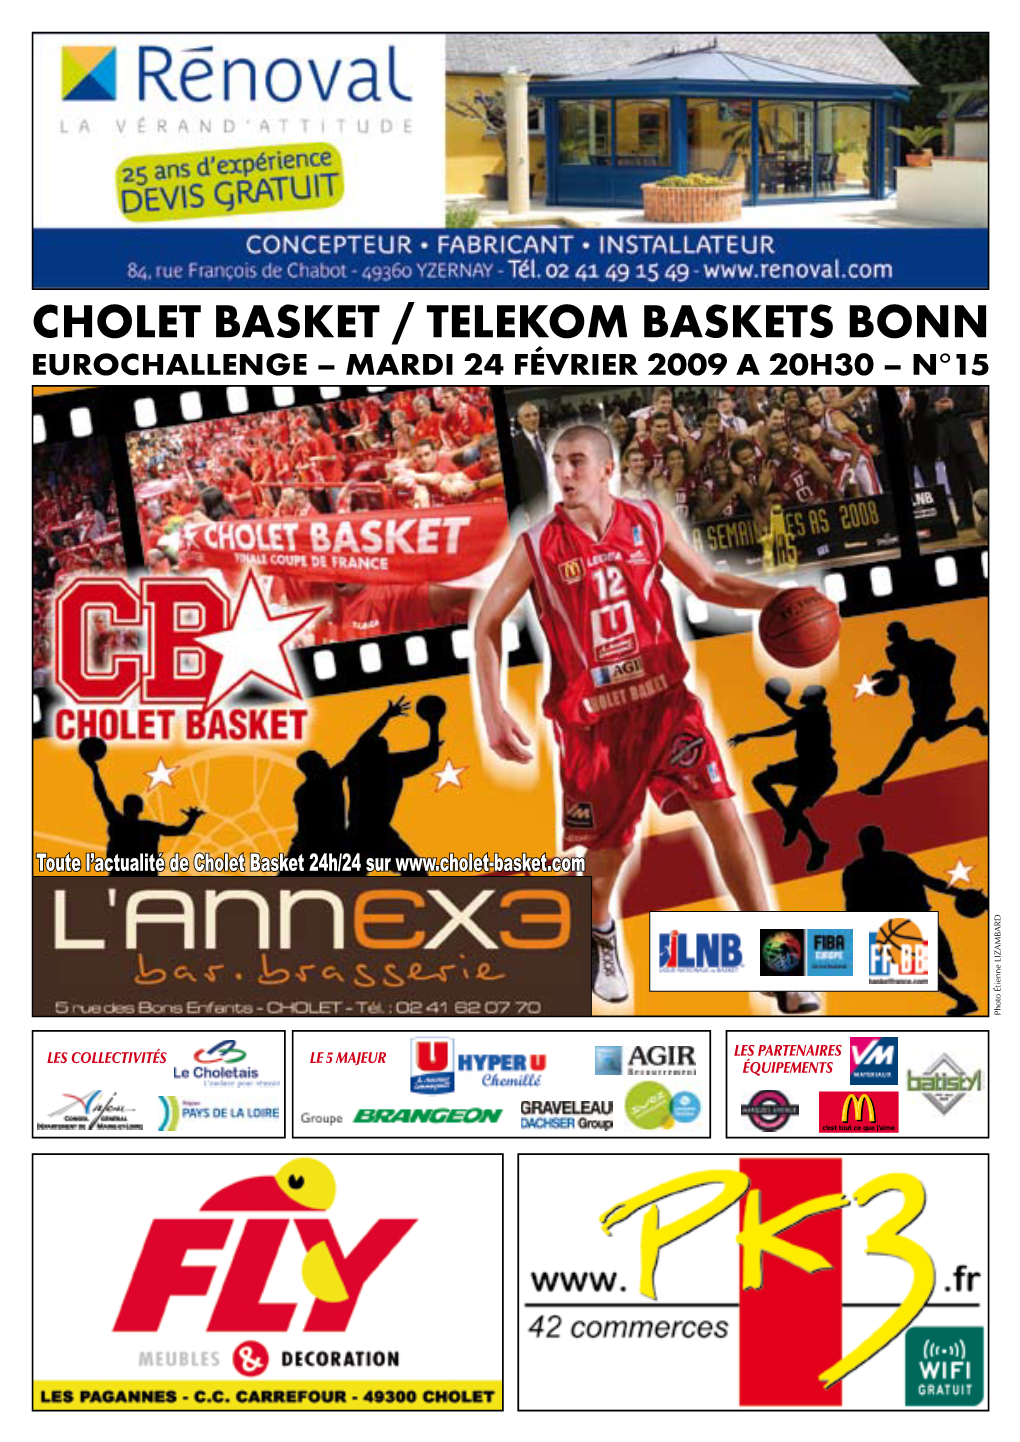 Cholet Basket / Telekom Baskets Bonn Eurochallenge – Mardi 24 Février 2009 a 20H30 – N°15